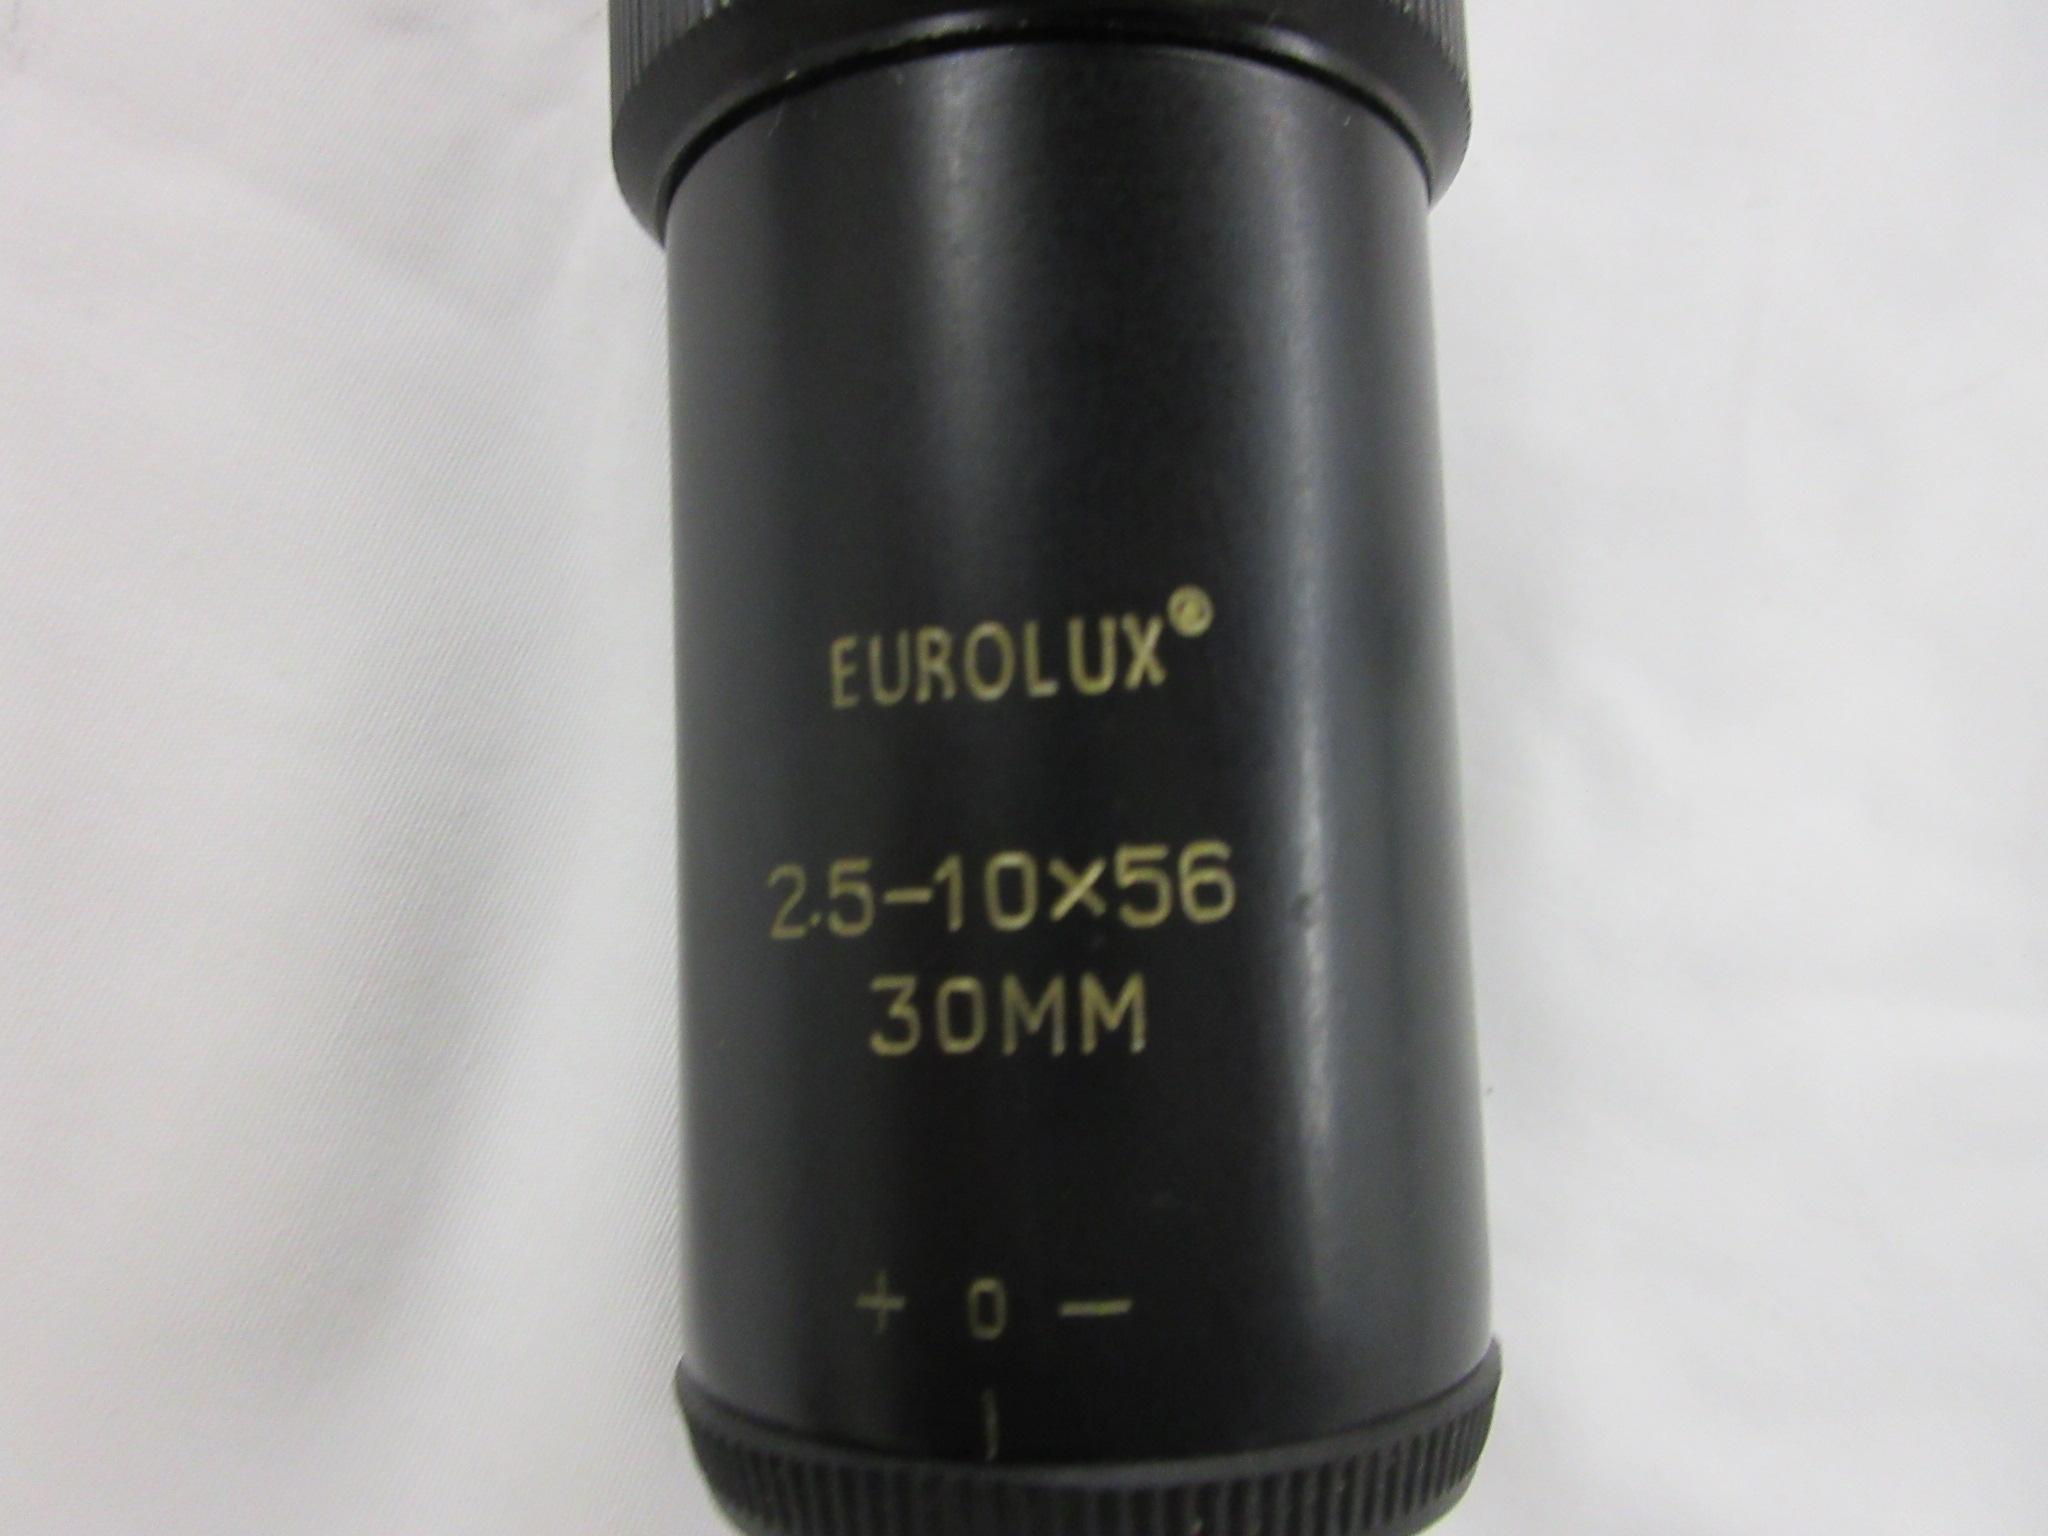 Eurolux 2.5-10x56 Triplex scope